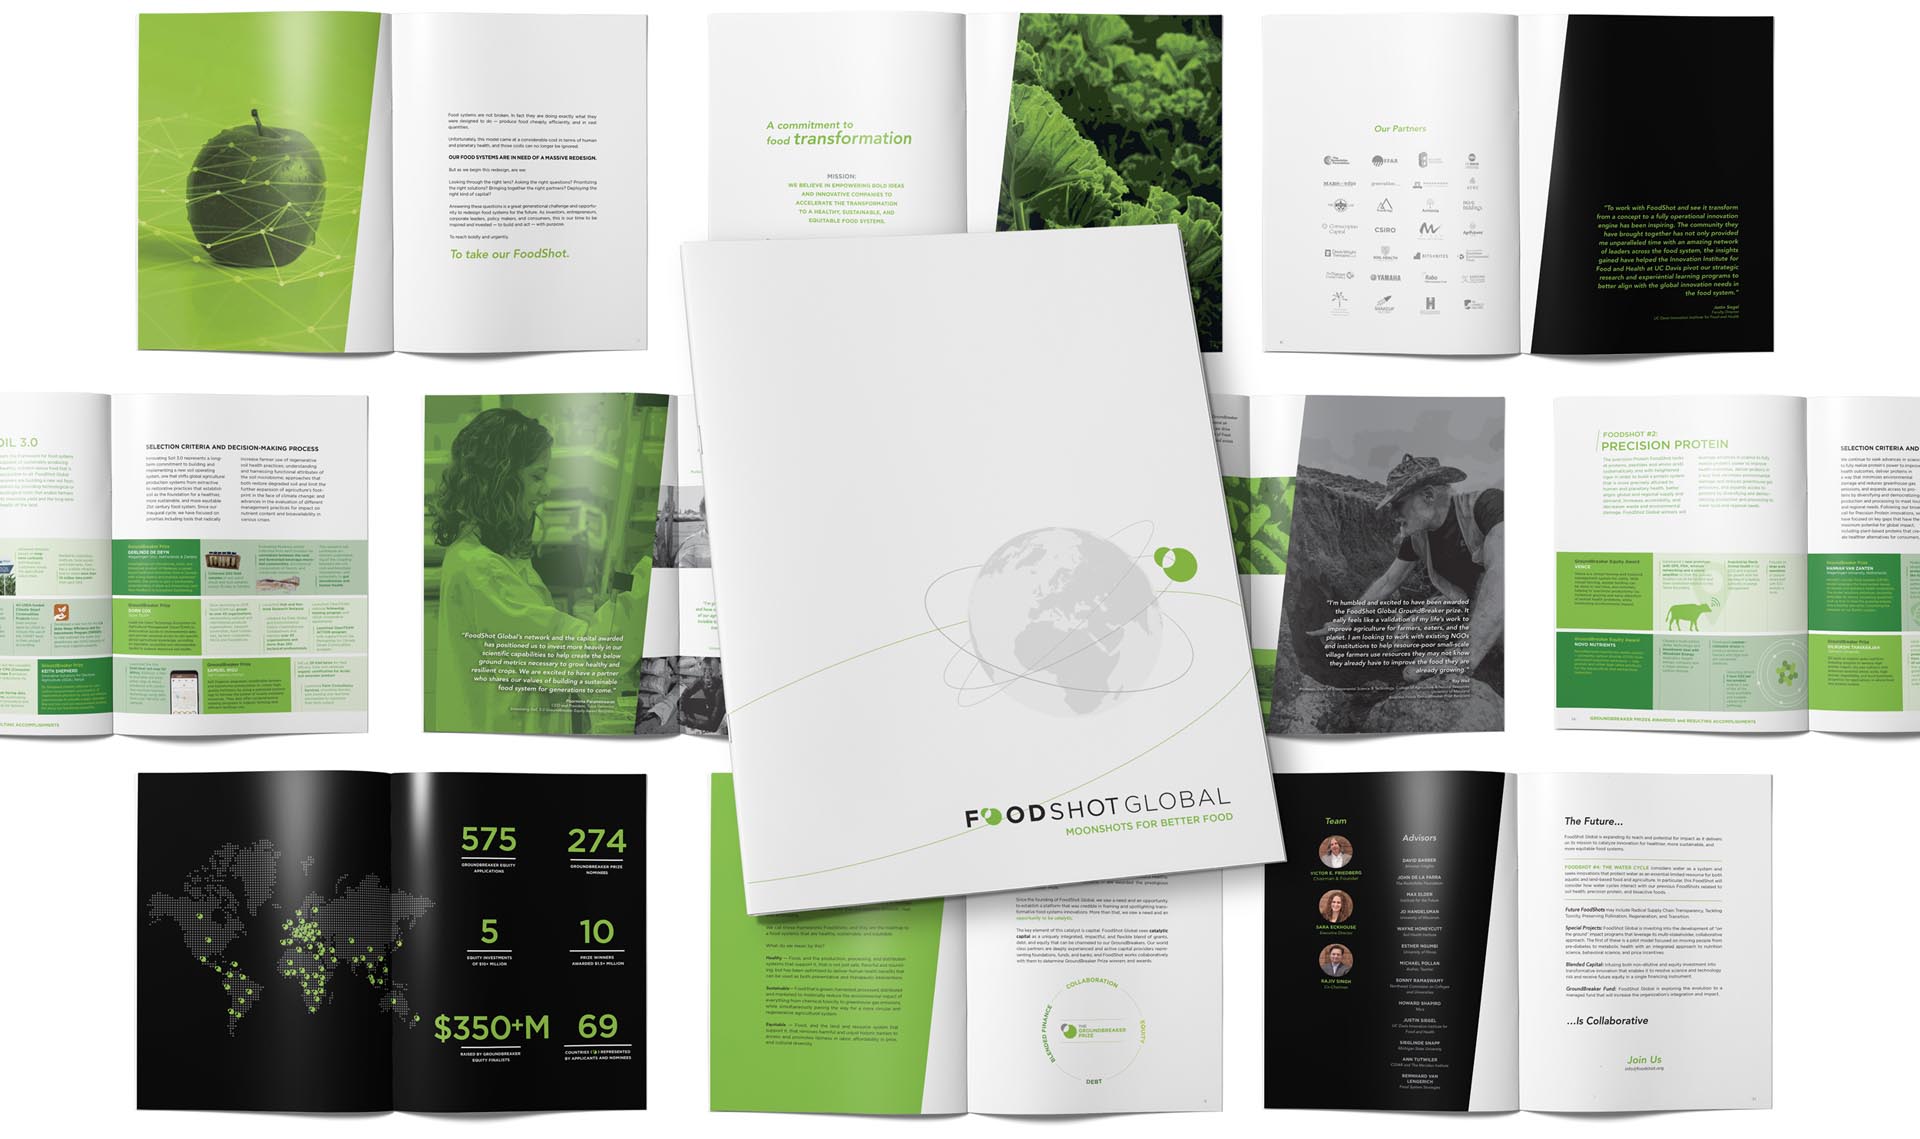 image of FoodShot Global brochure design